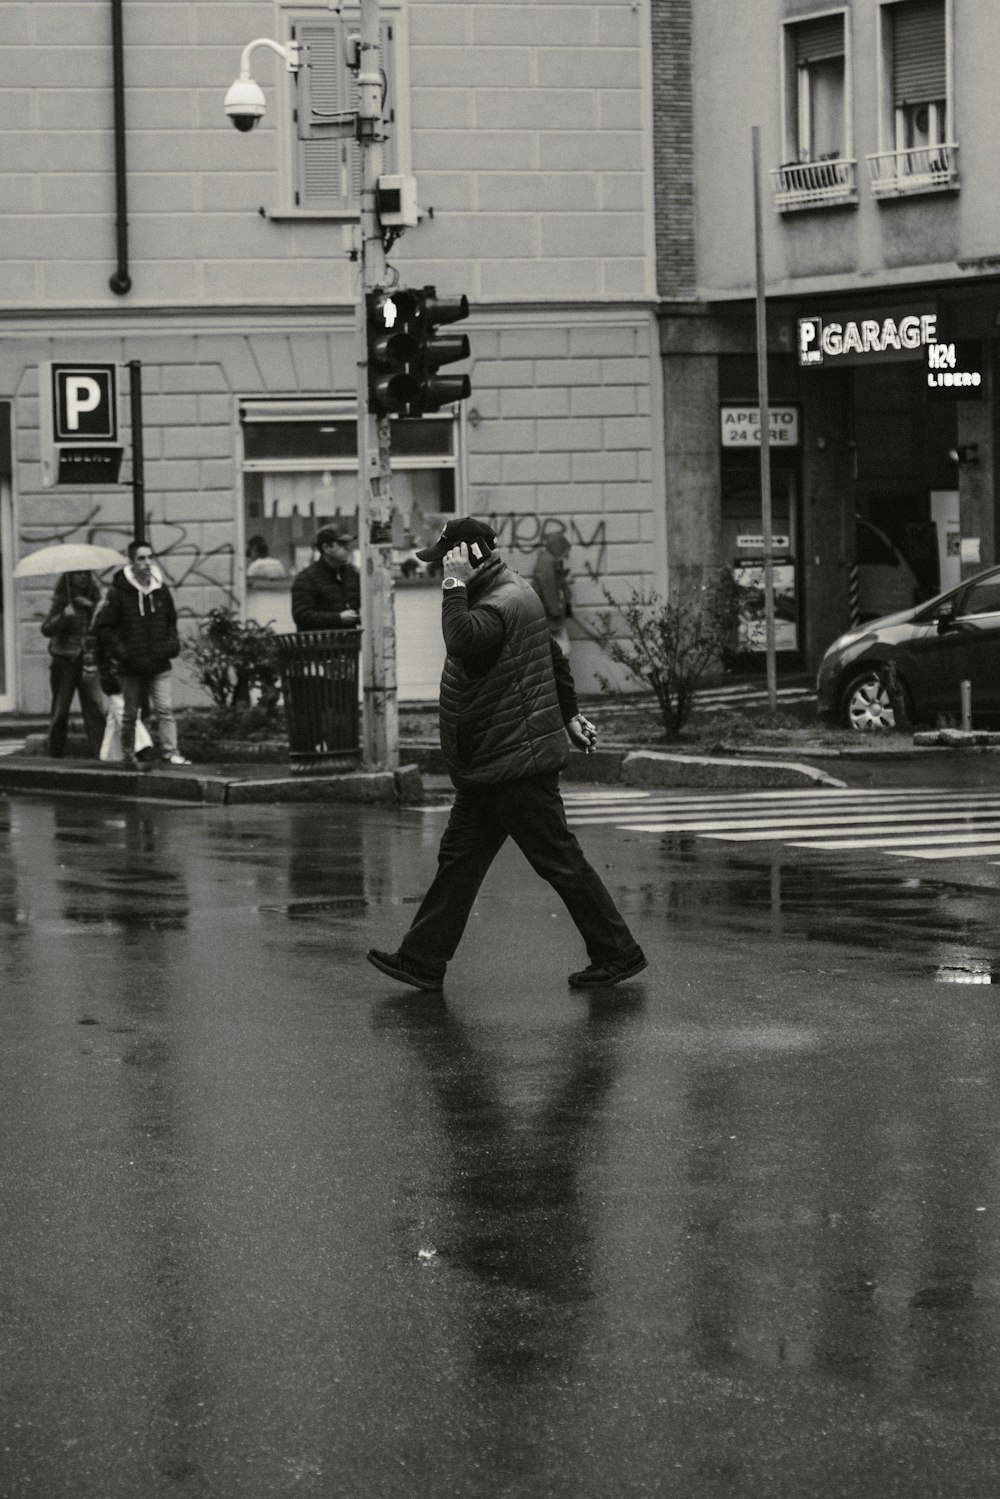 a man walking across a street holding an umbrella